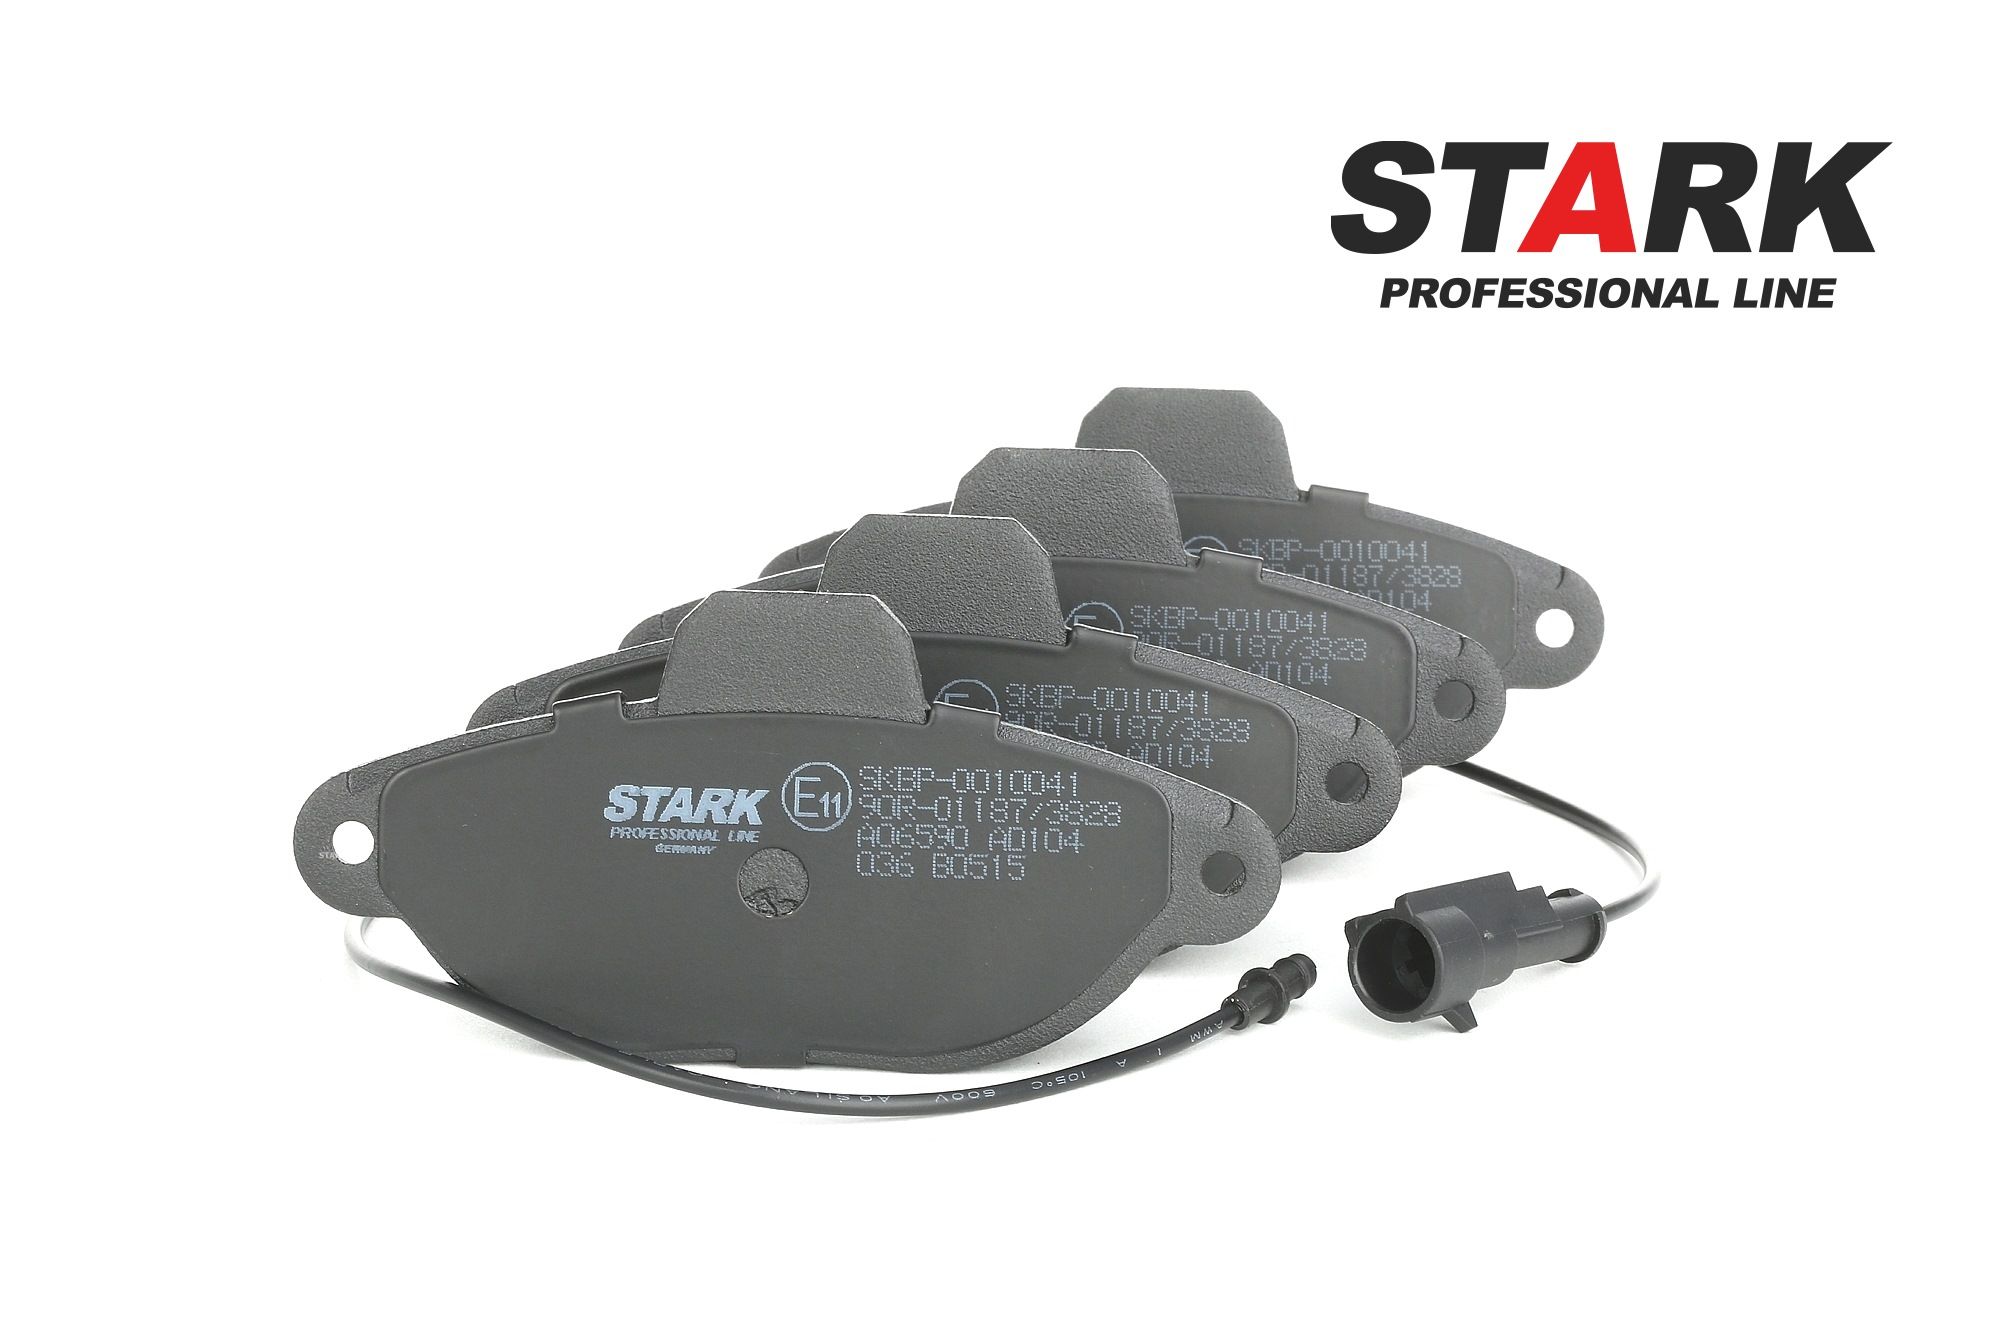 STARK SKBP-0010041 Kit pastiglie freno Assale anteriore, Con contatto segnalazione usura Fiat SEICENTO 2006 di qualità originale